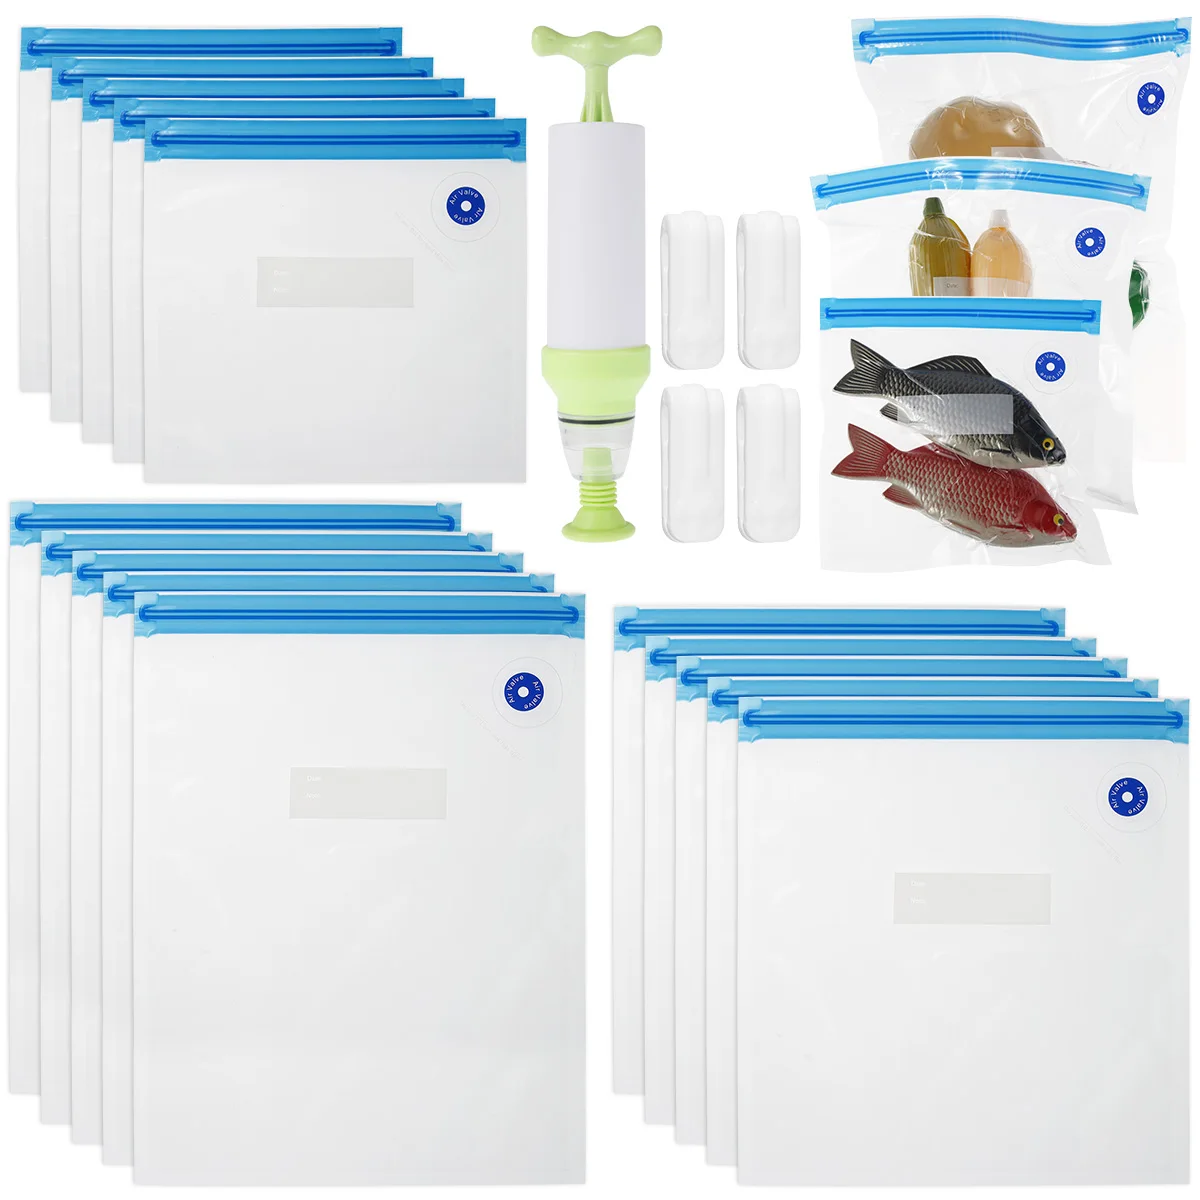 

Sous Vide Bags 20Pcs Reusable Vacuum Food Storage Bags Kit with 15Pcs 3 Sizes Vacuum Food Bags 4 Sealing Clips 1 Hand Pump